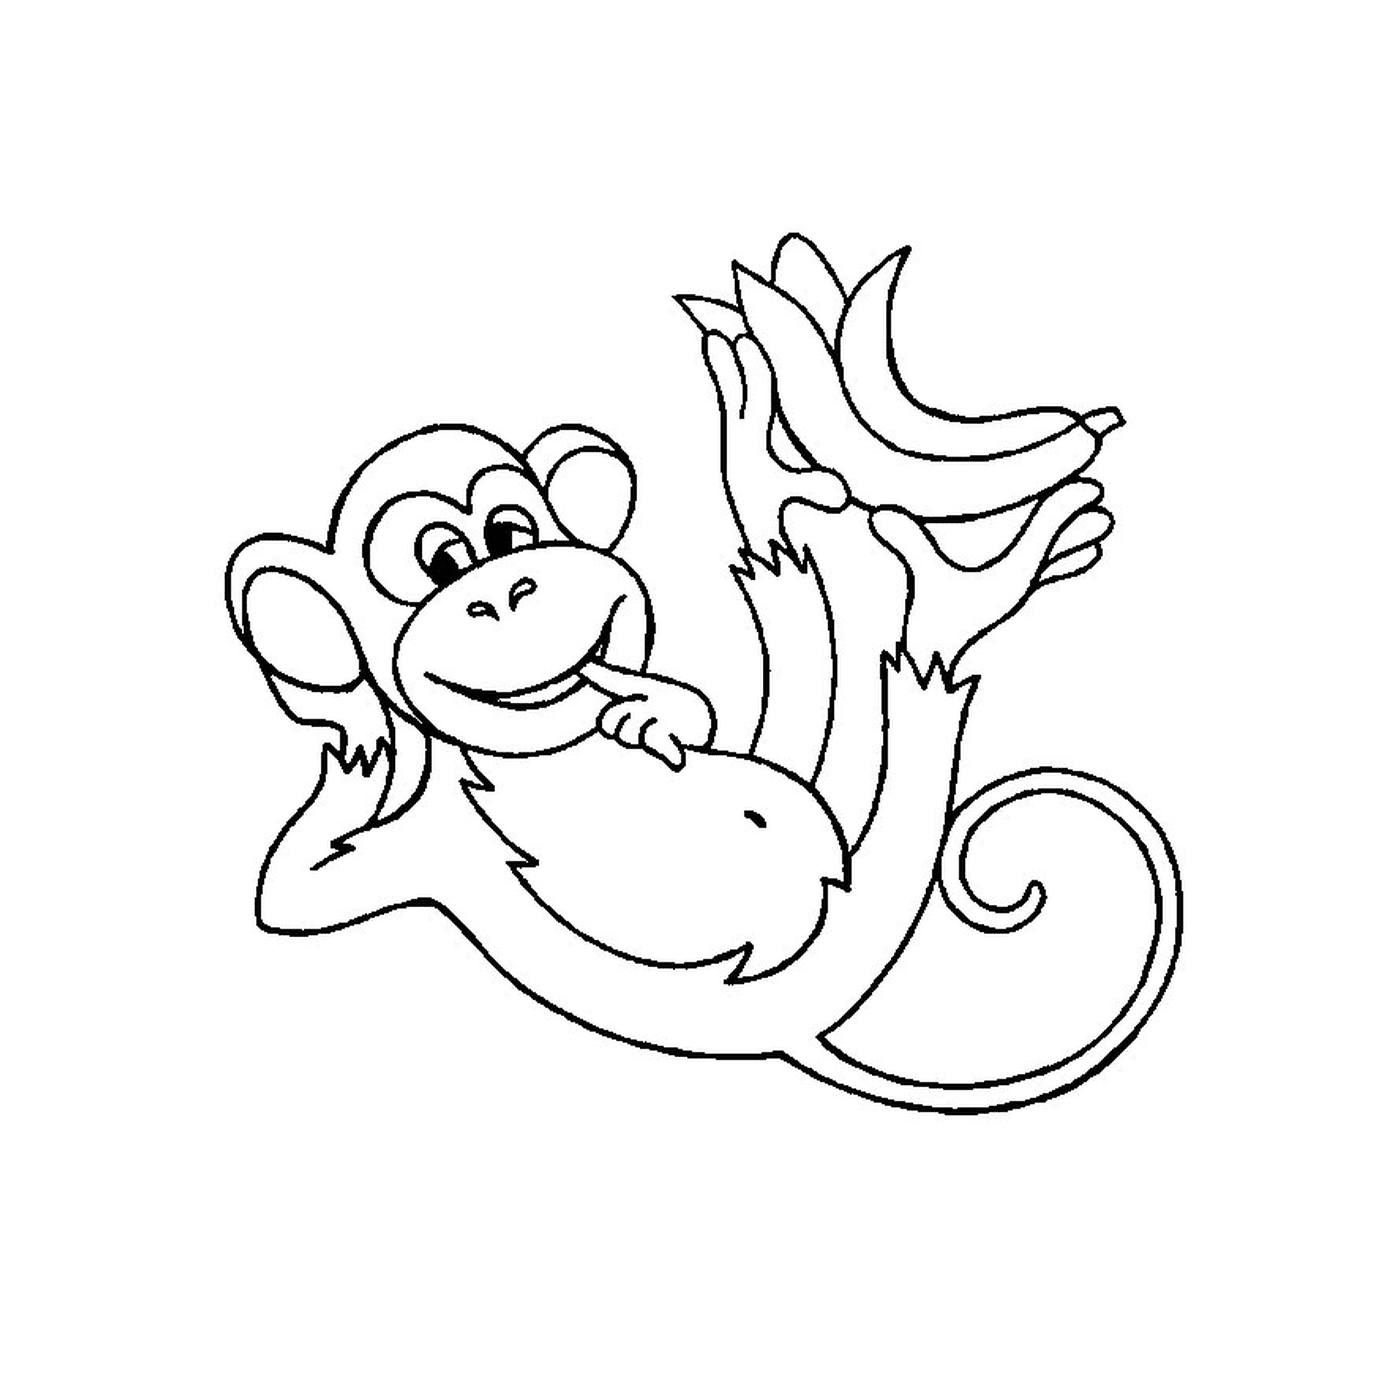  A monkey holding a banana 